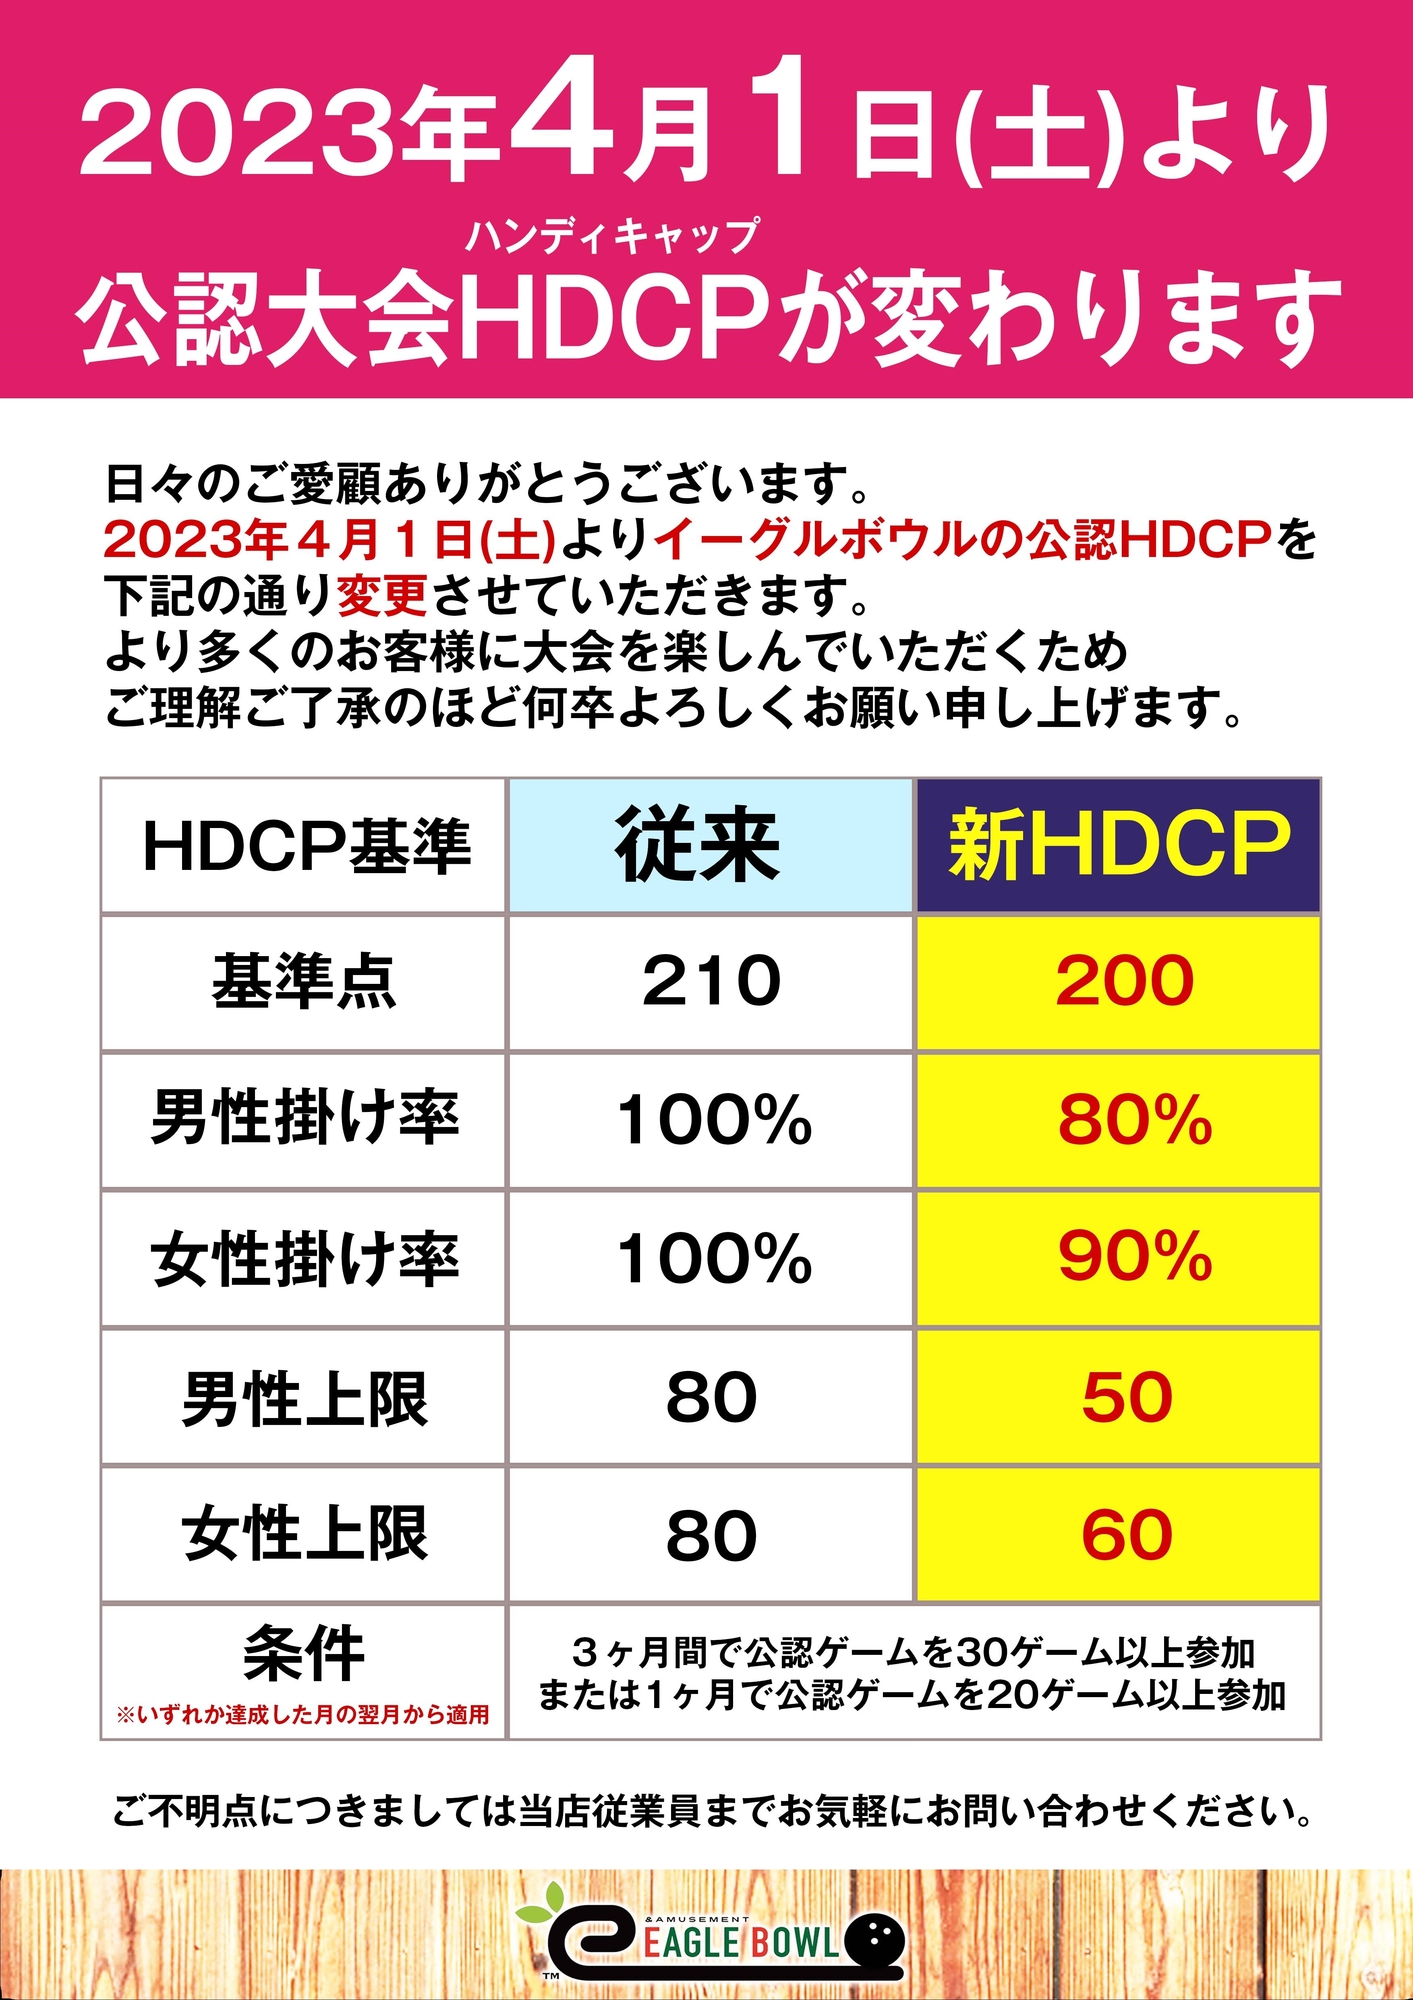 2023年4月より公認大会HDCP基準を変更いたします